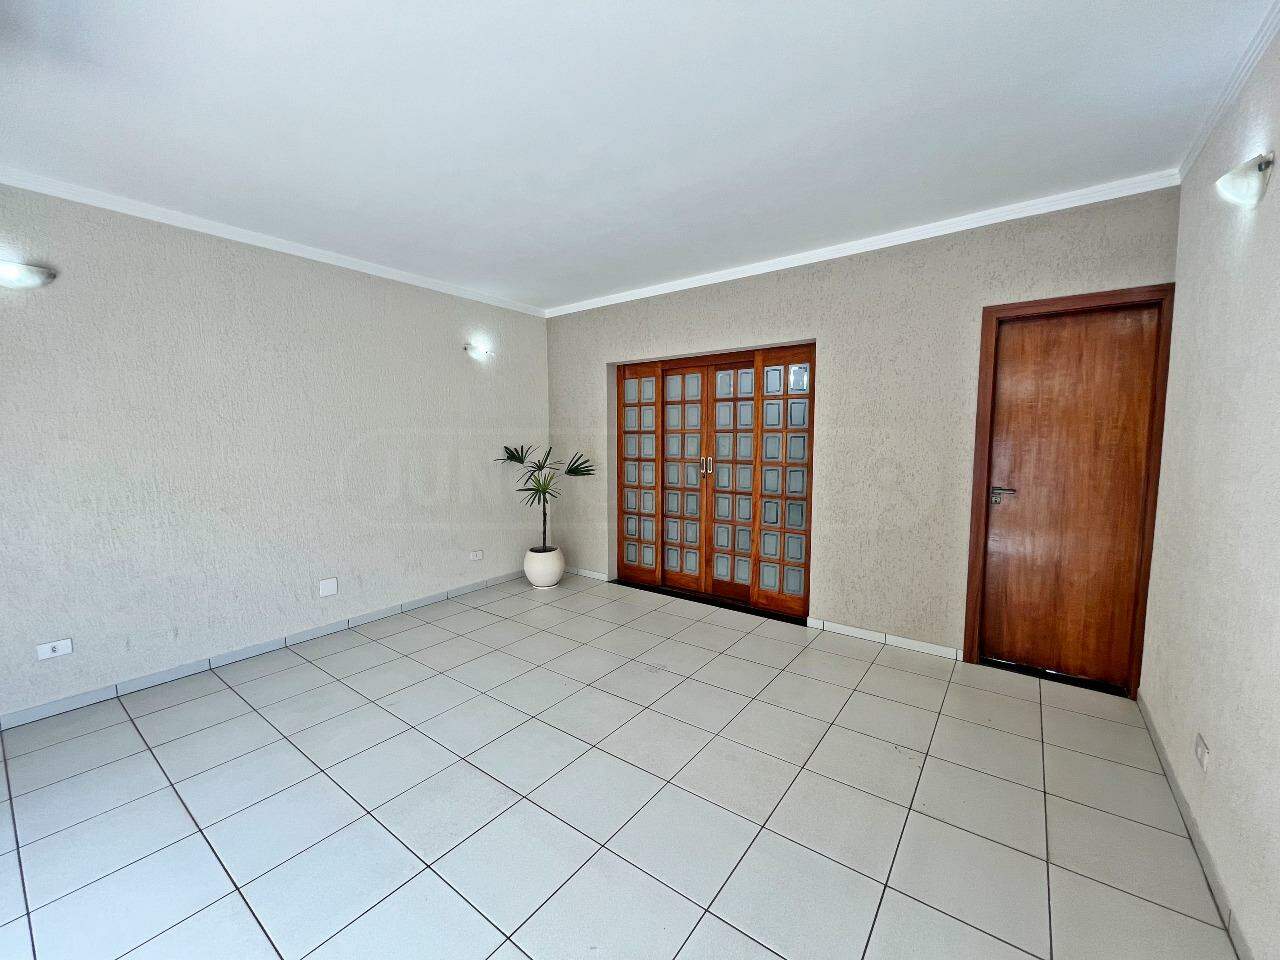 Casa à venda, 3 quartos, sendo 1 suíte, 2 vagas, no bairro Santa Terezinha em Piracicaba - SP